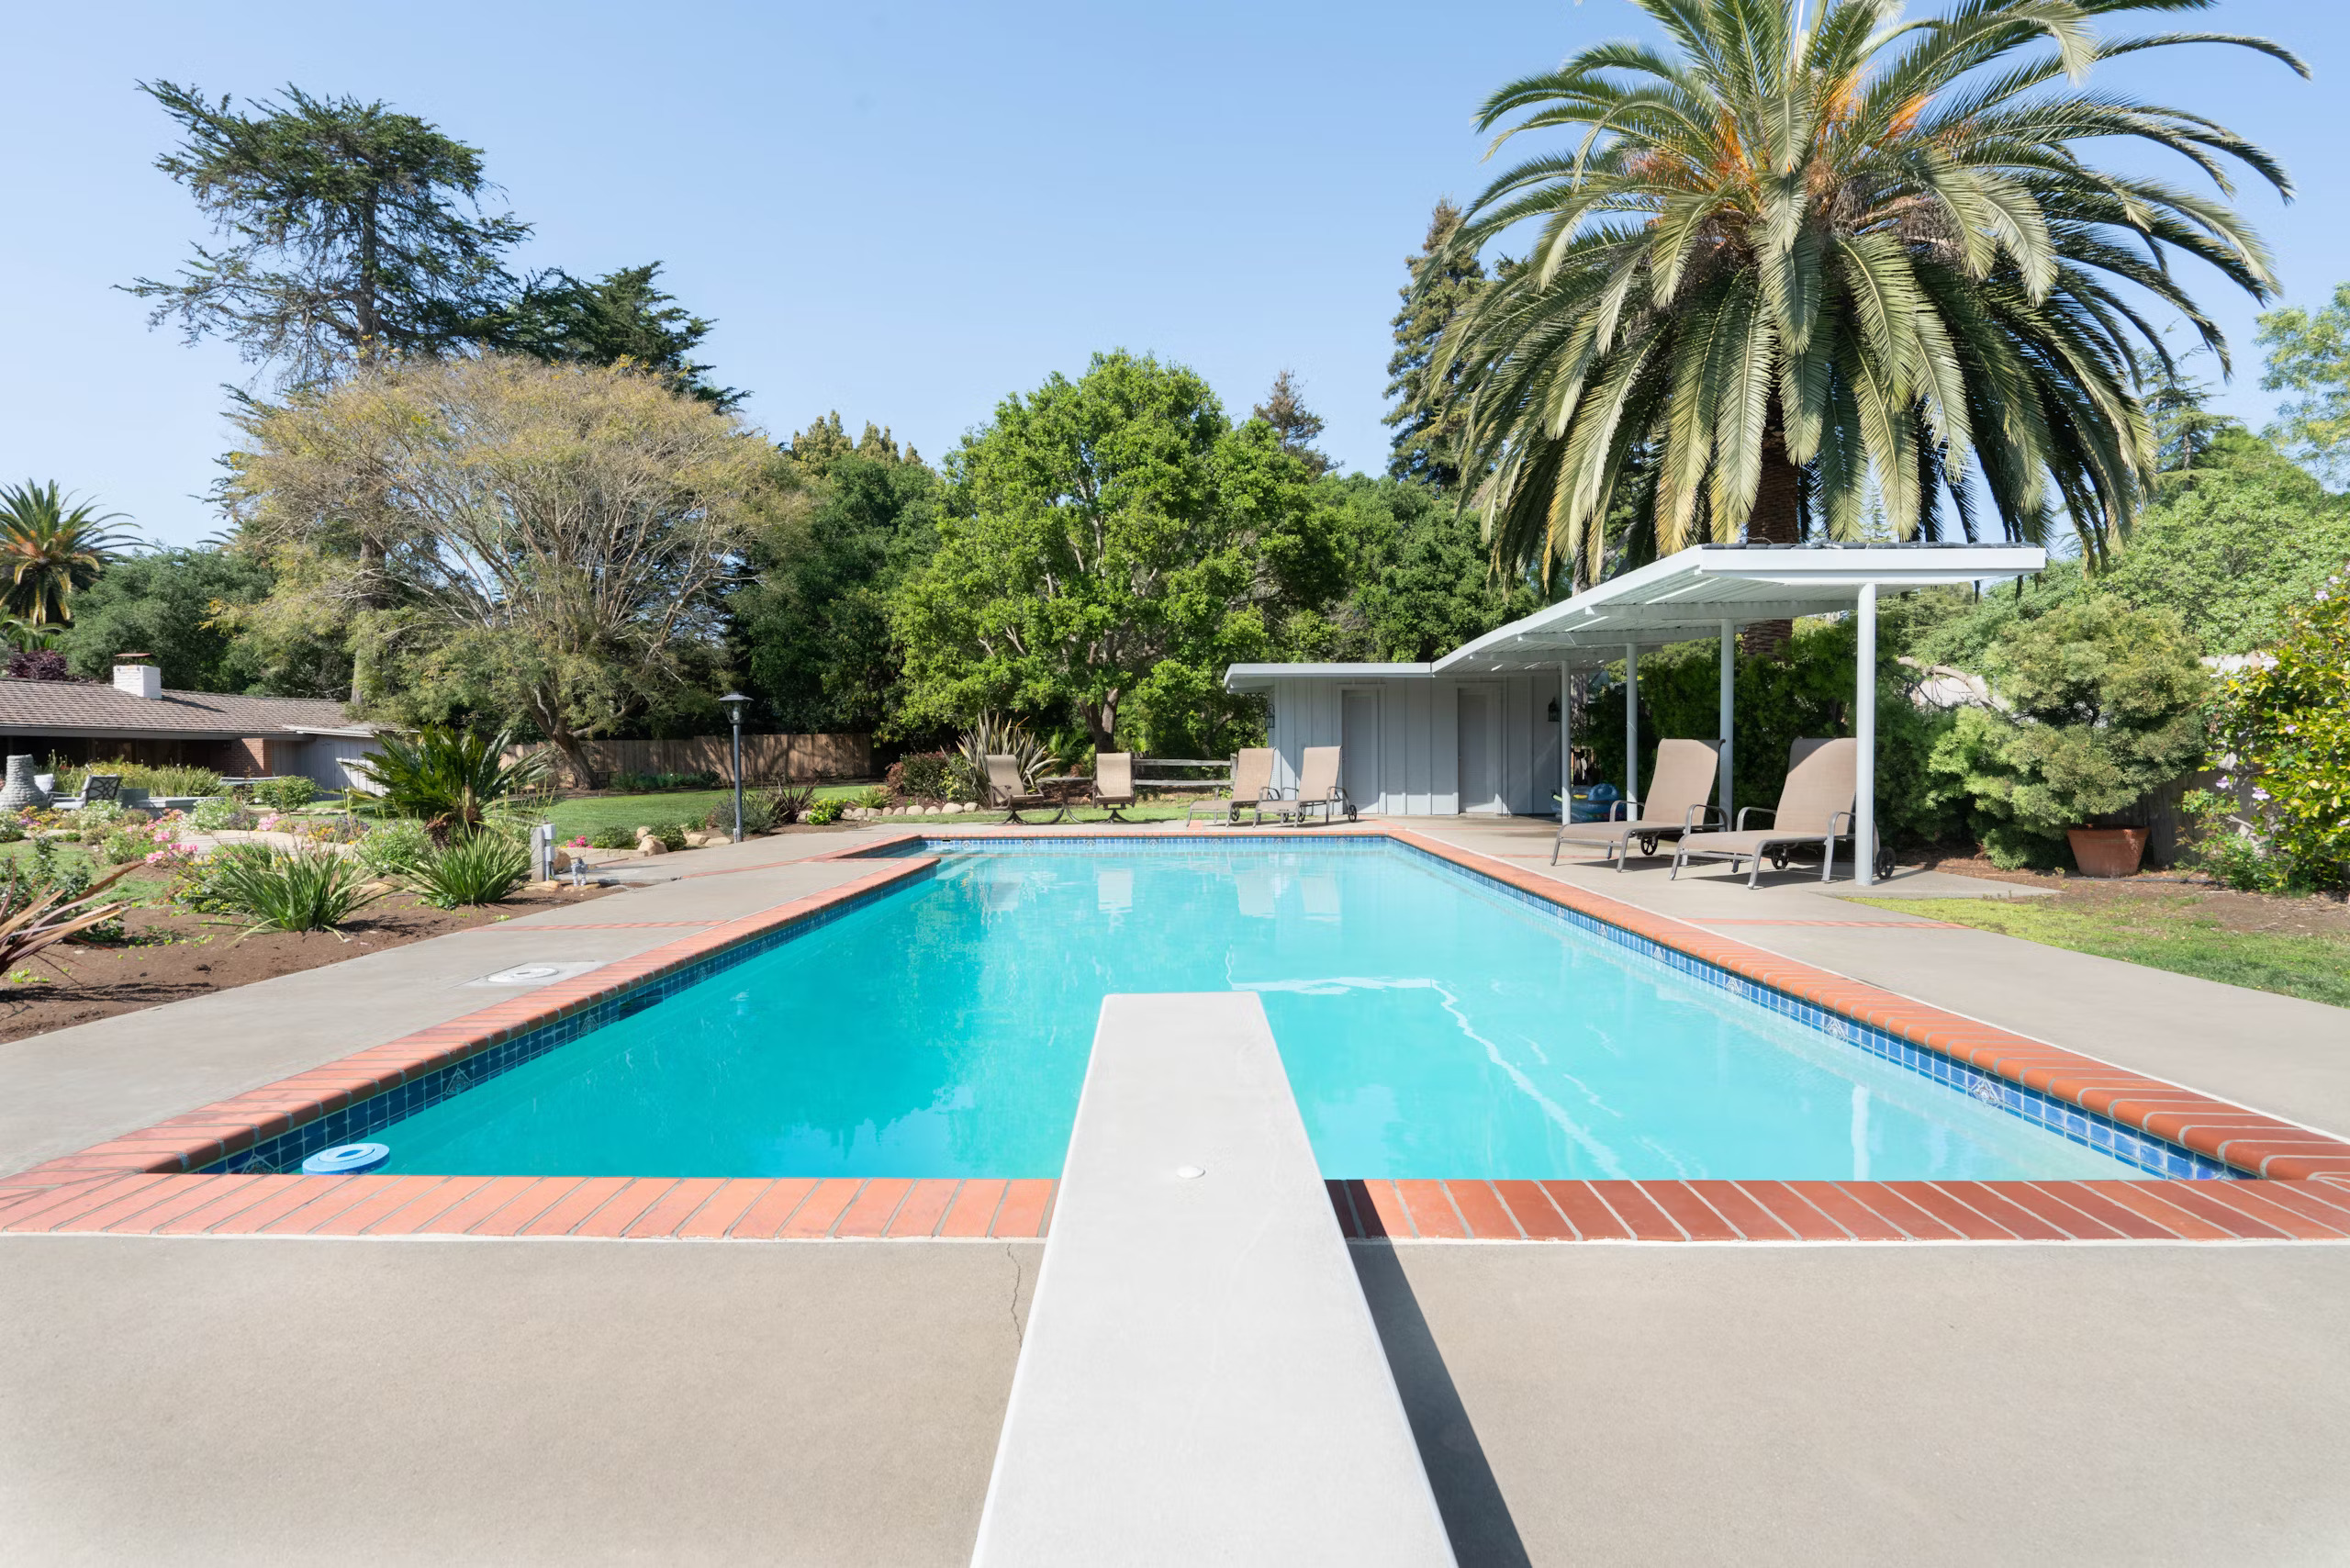 View of the pool at Santa Barbara, California, vacation rental home called Ranch Delight.